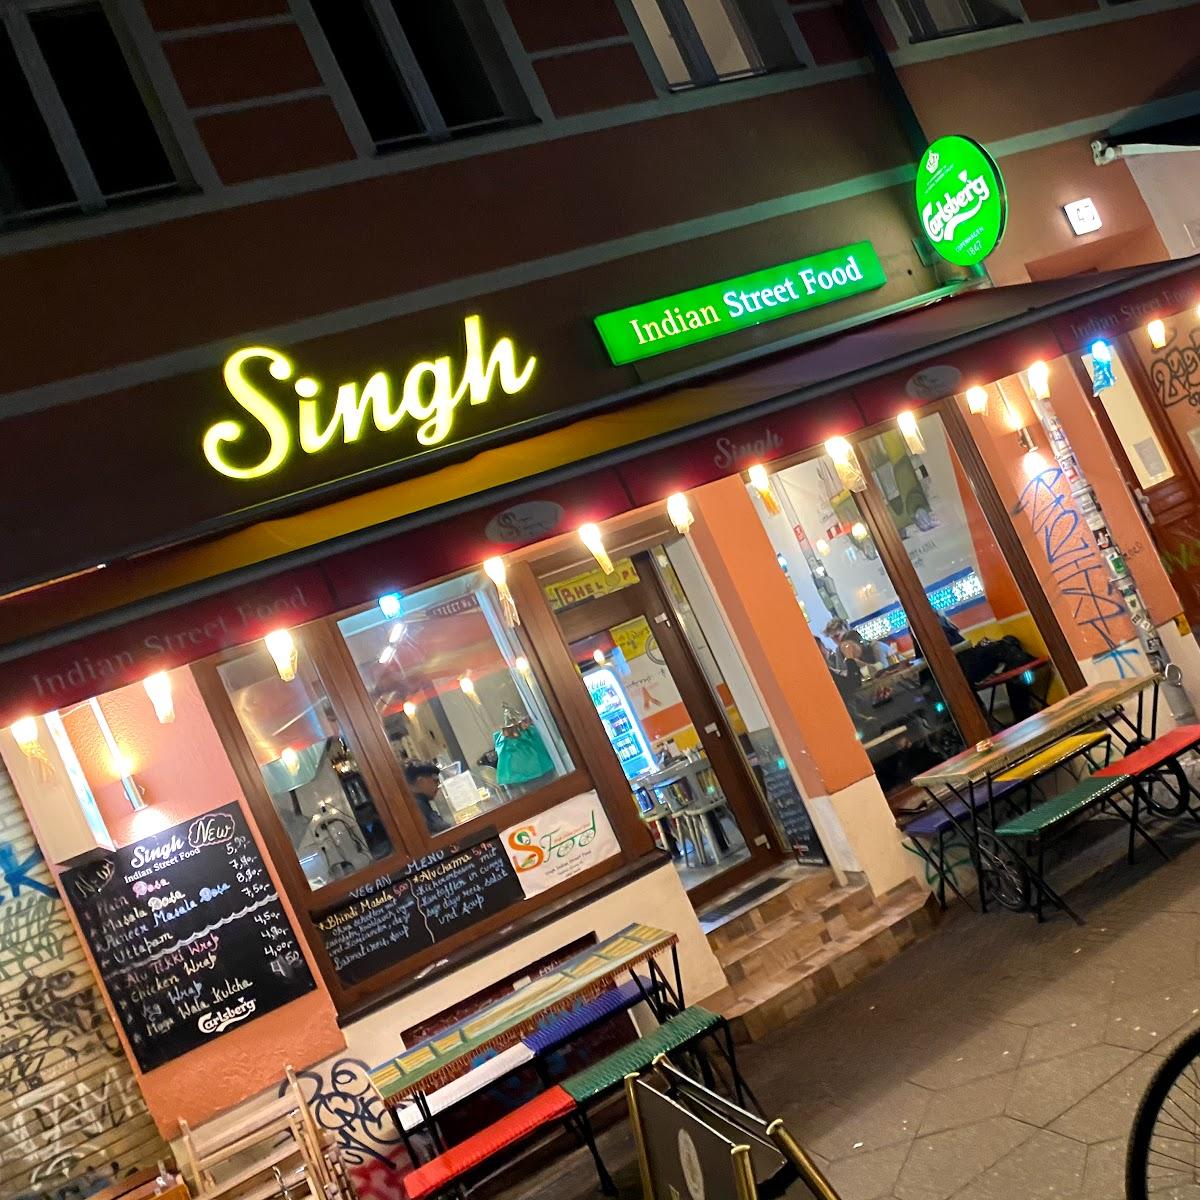 Restaurant "Singh Indian Street Food" in Berlin